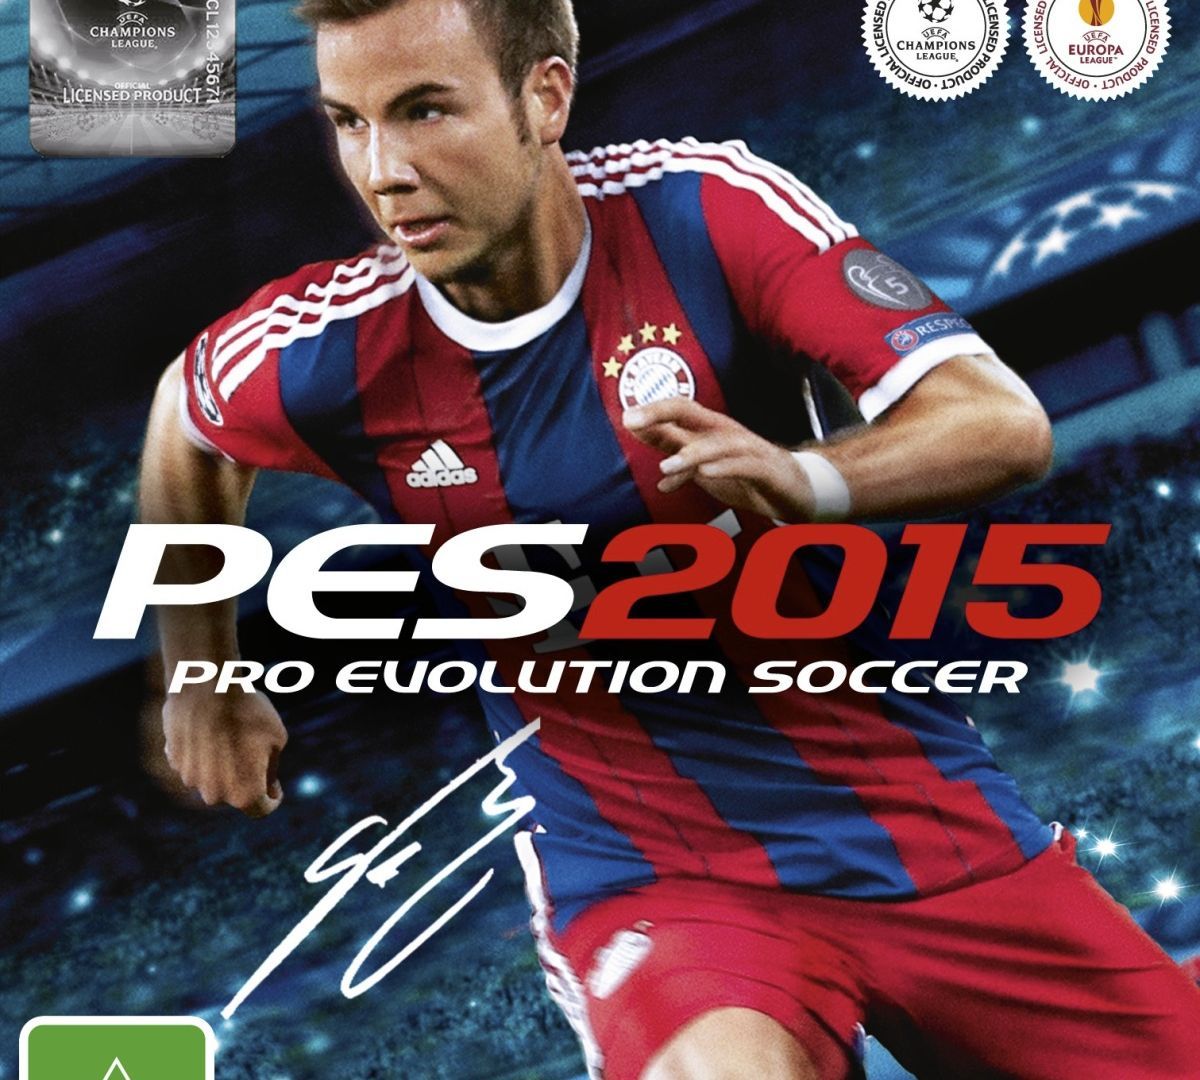 Pro Evolution Soccer 2015 : Astuces et guides - jeuxvideo.com